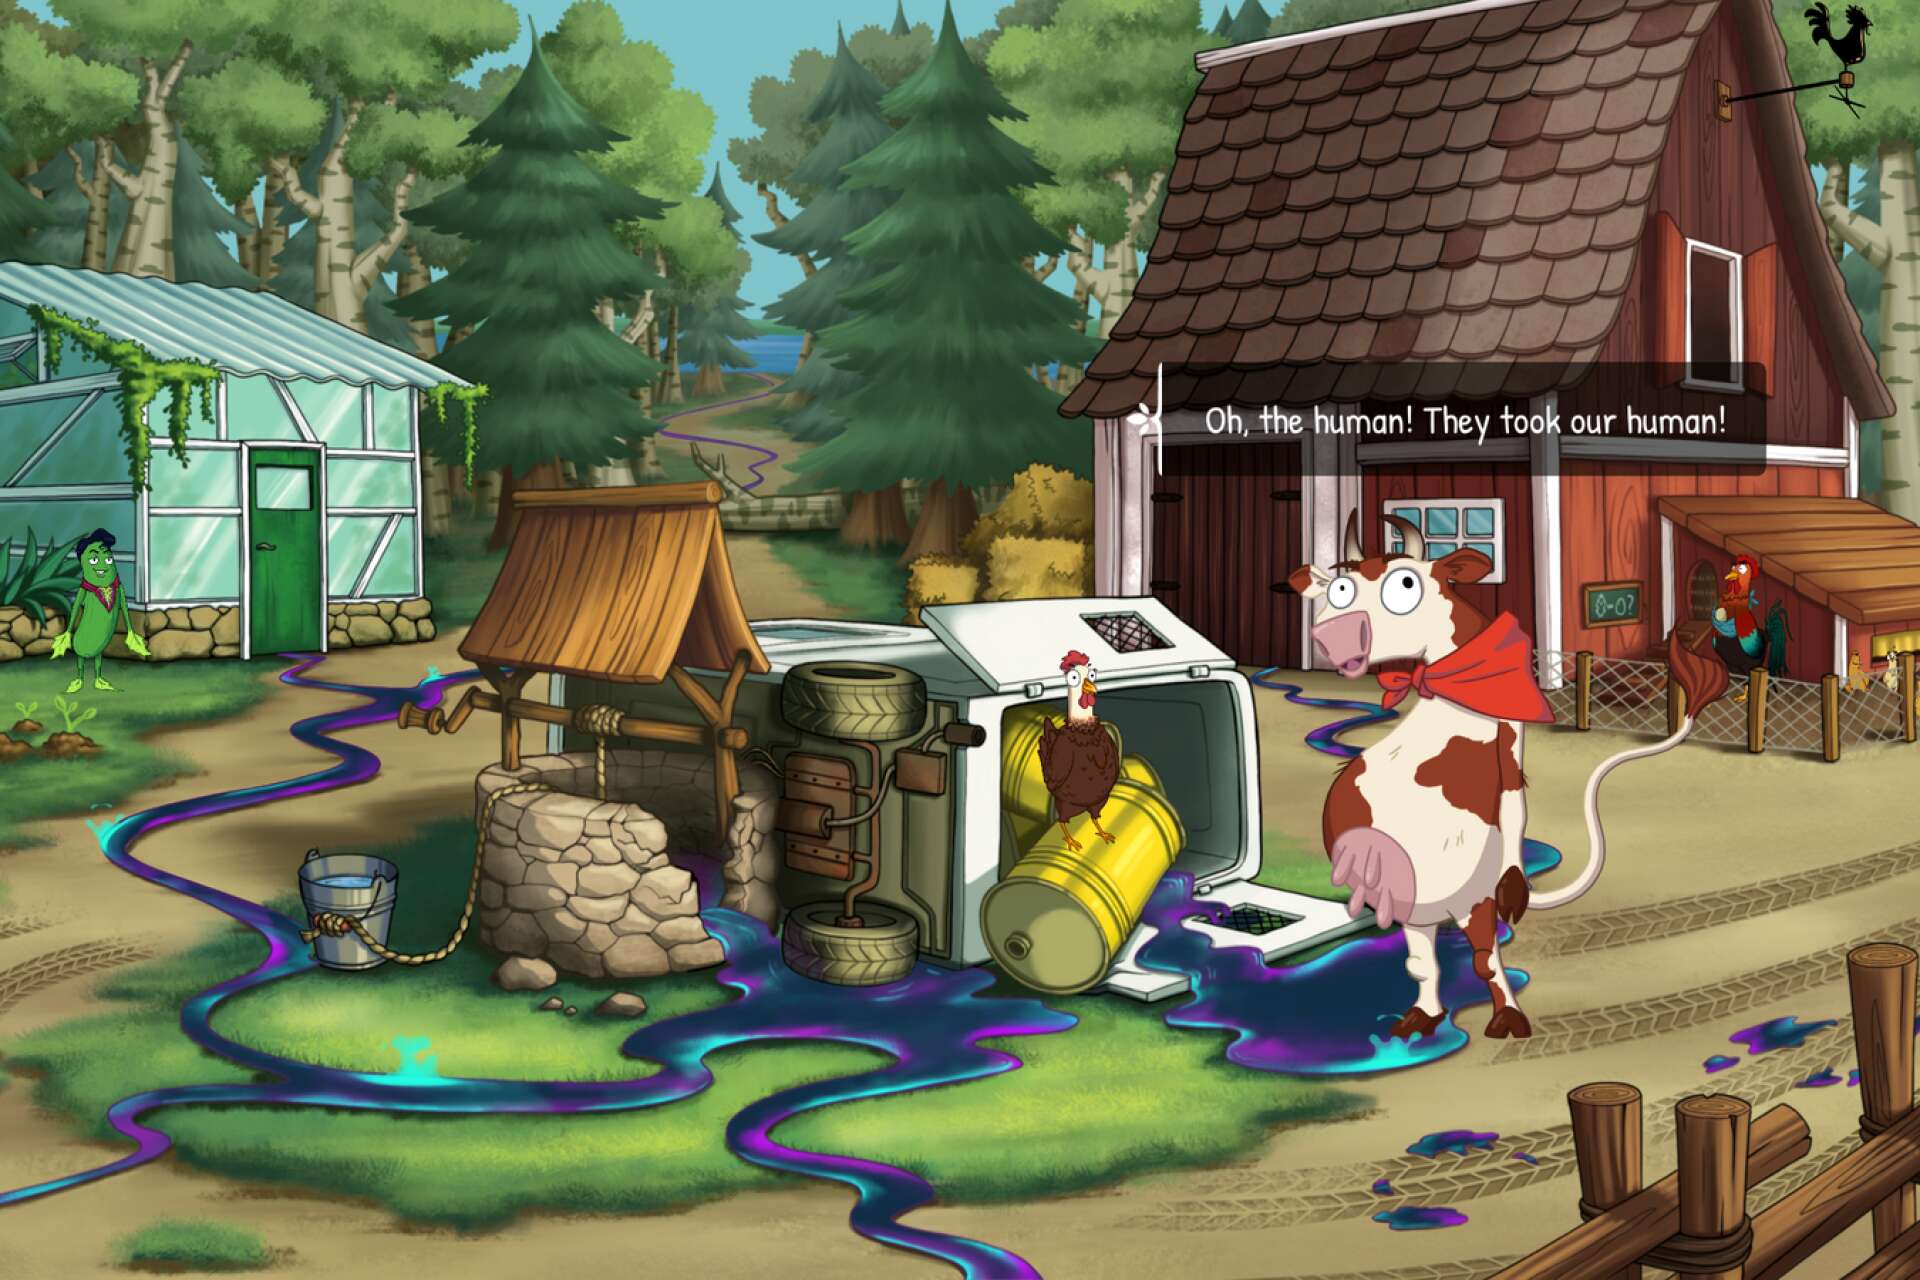 Screenshot från &quot;A Trail of Ooze&quot;, ett spel som lyfter miljöfrågor.